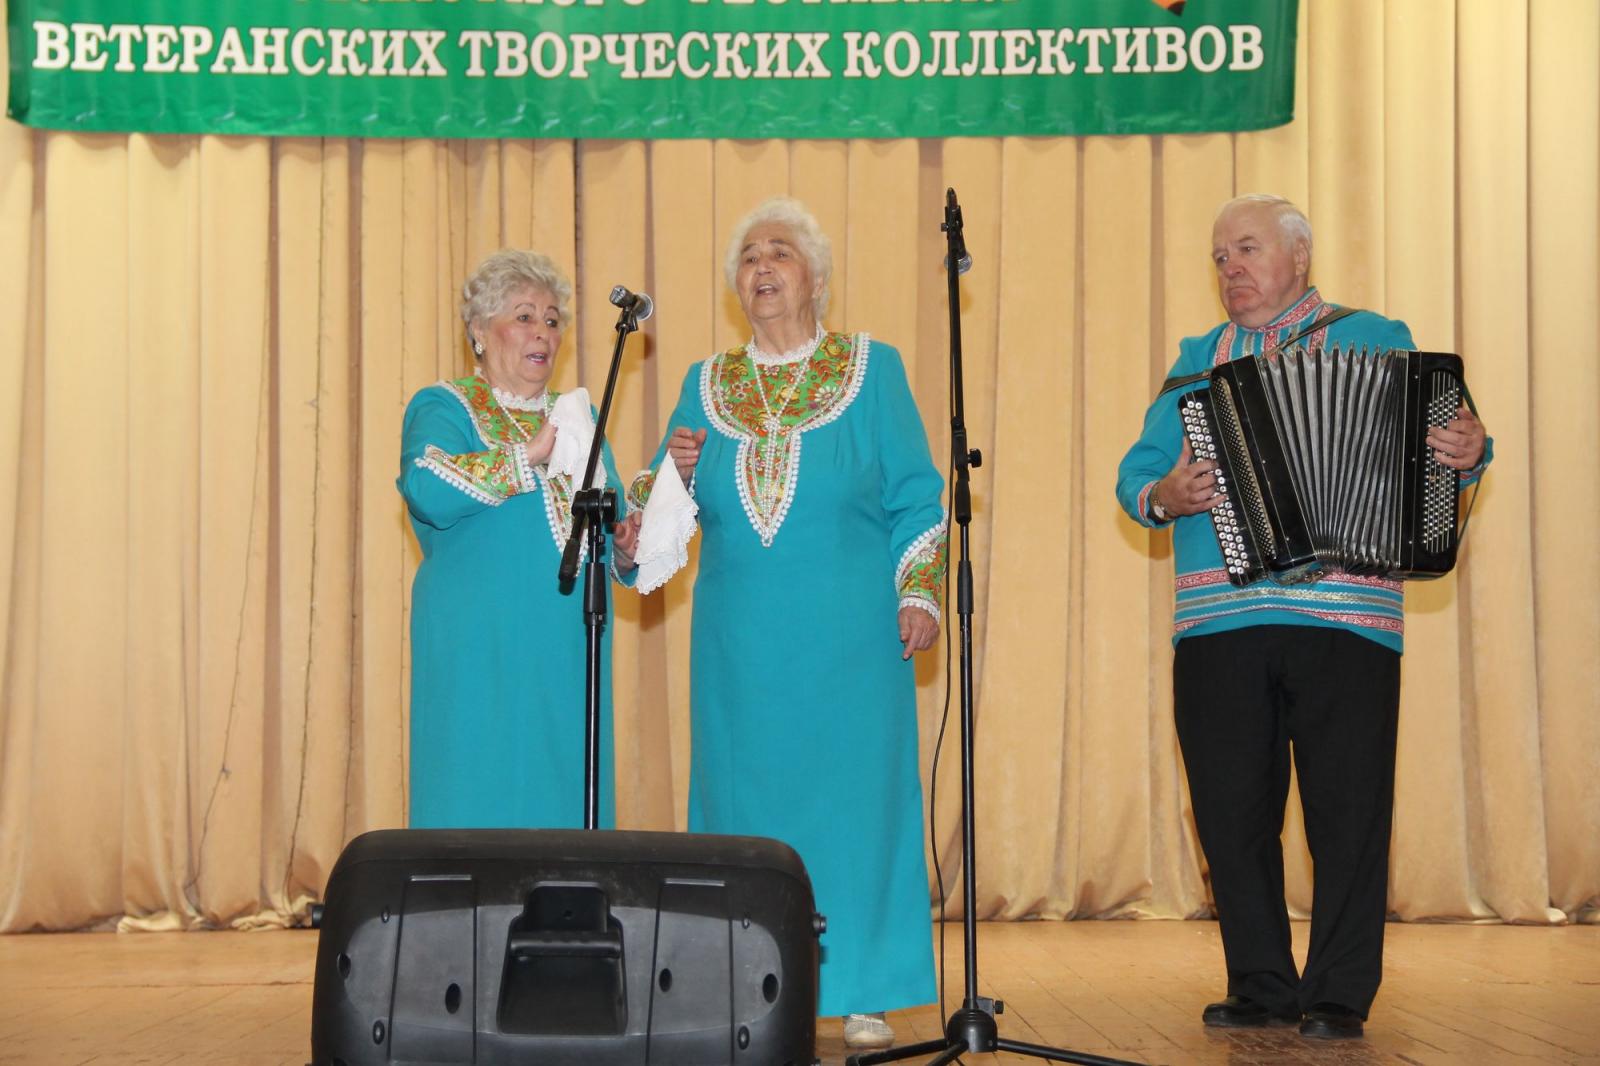 Заключительный концерт Лауреатов и Дипломантов V областного фестиваля ветеранских творческих коллективов состоялся в городе Орле